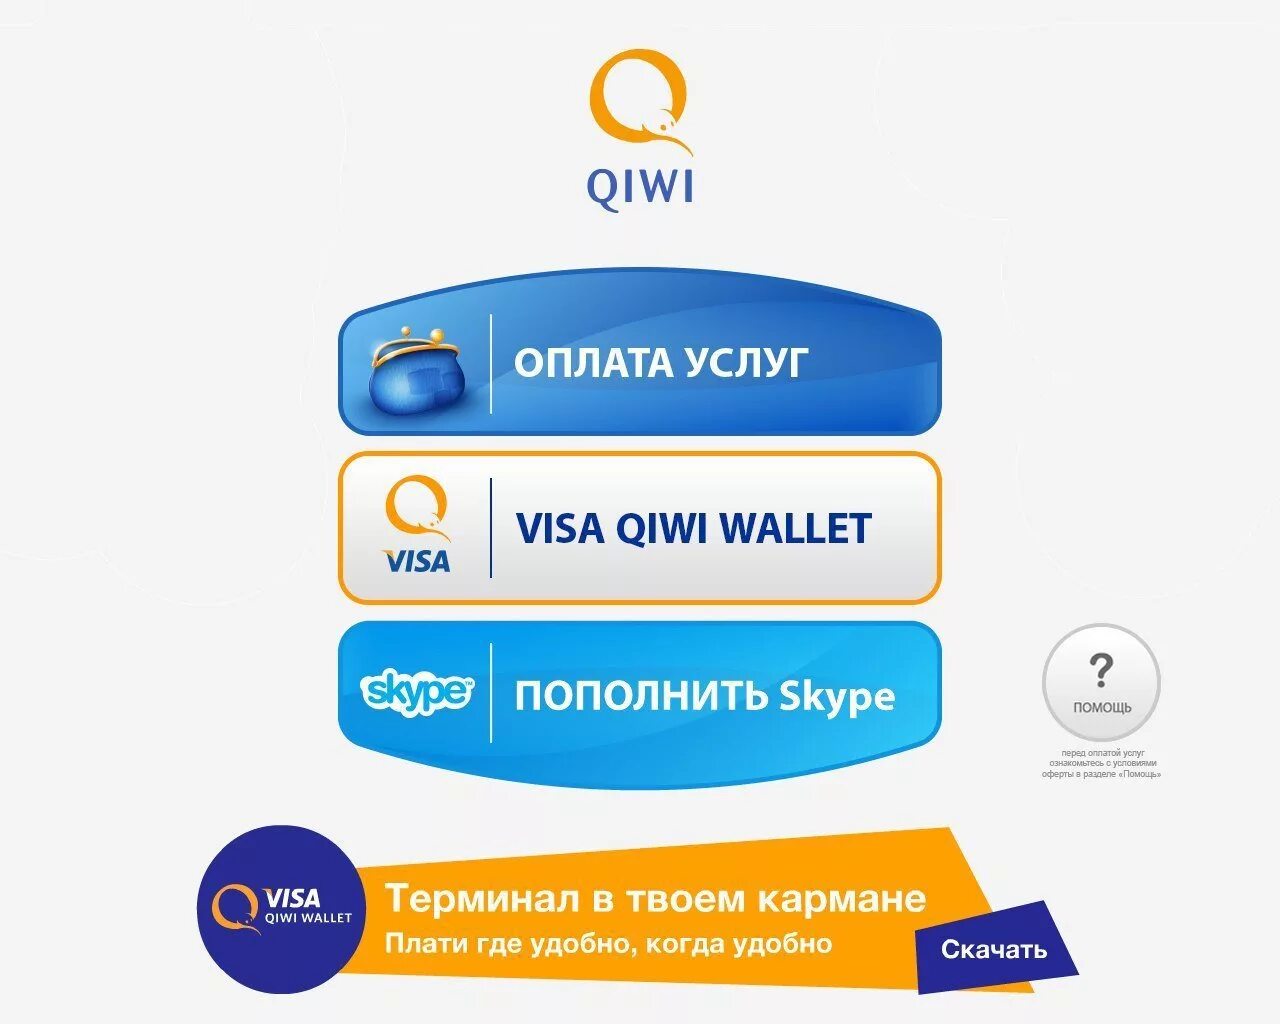 Visa кошелек. QIWI кошелек. Киви электронный кошелек. Киви виза. Visa QIWI Wallet пополнение.